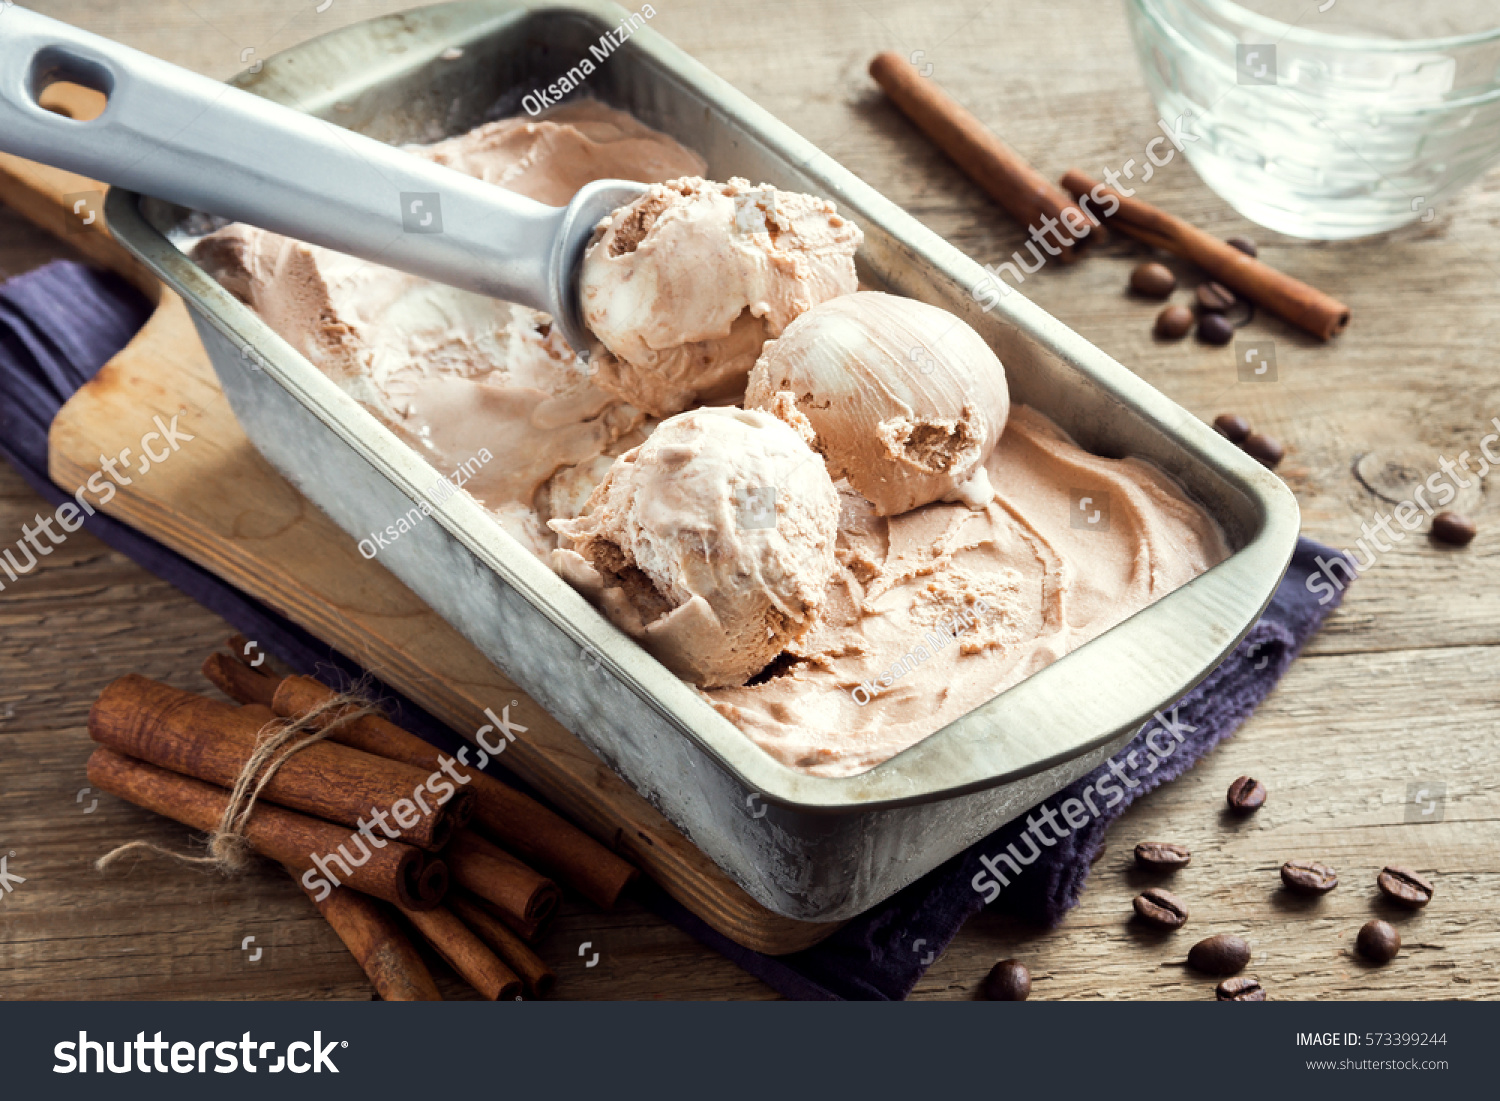 how to scoop frozen ice cream